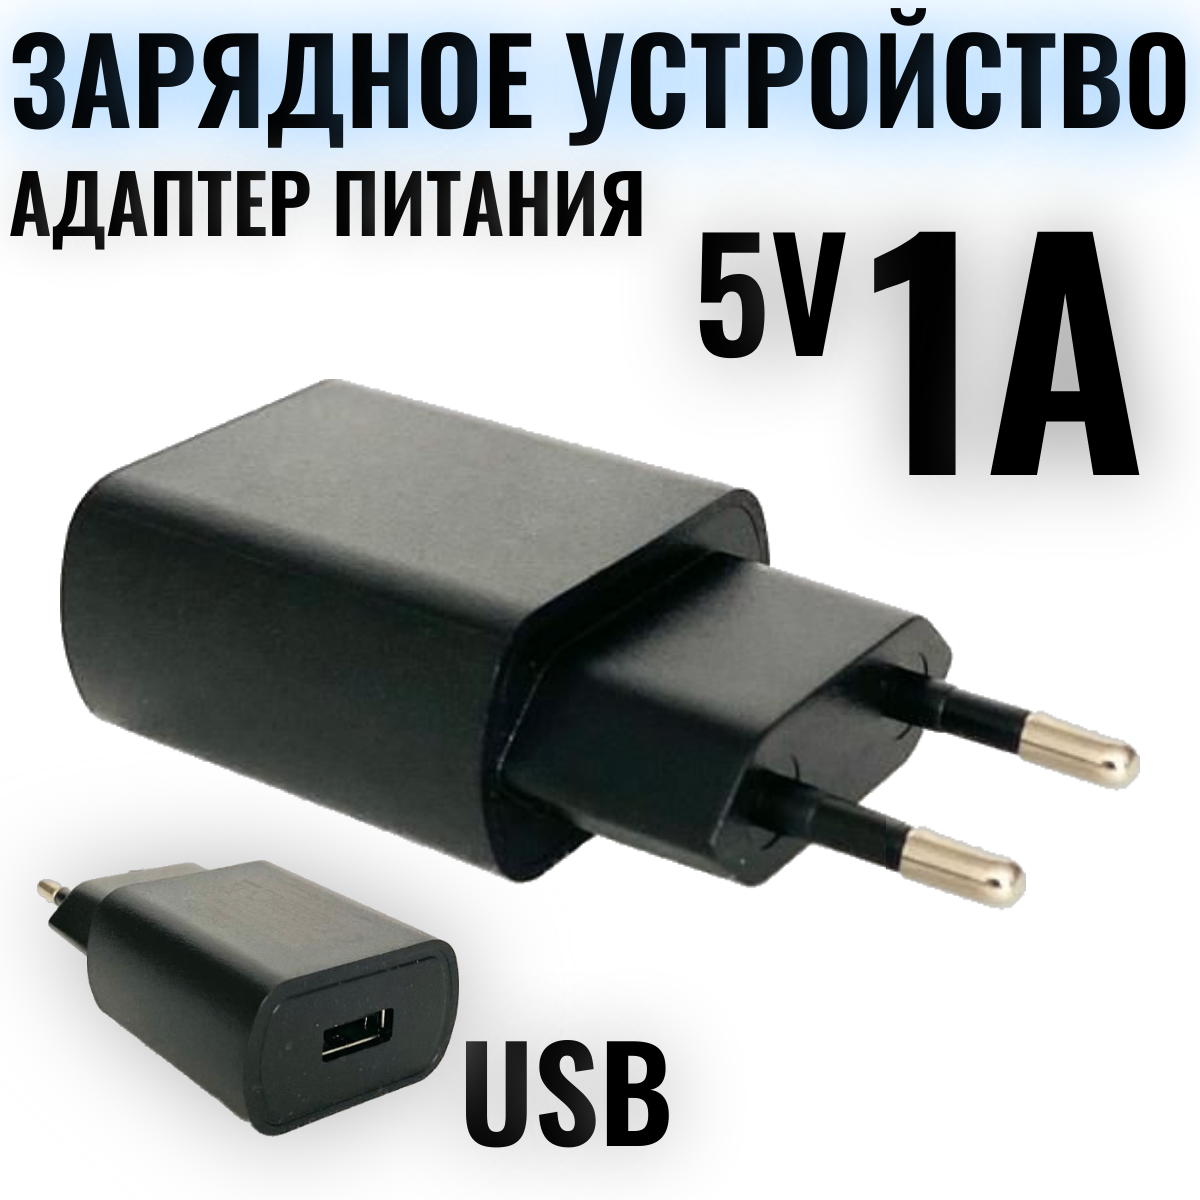 Сетевое зарядное устройство 5V / 1А / СЗУ/ универсальный адаптер питания для телефона/ блок зарядки для смартфона черный